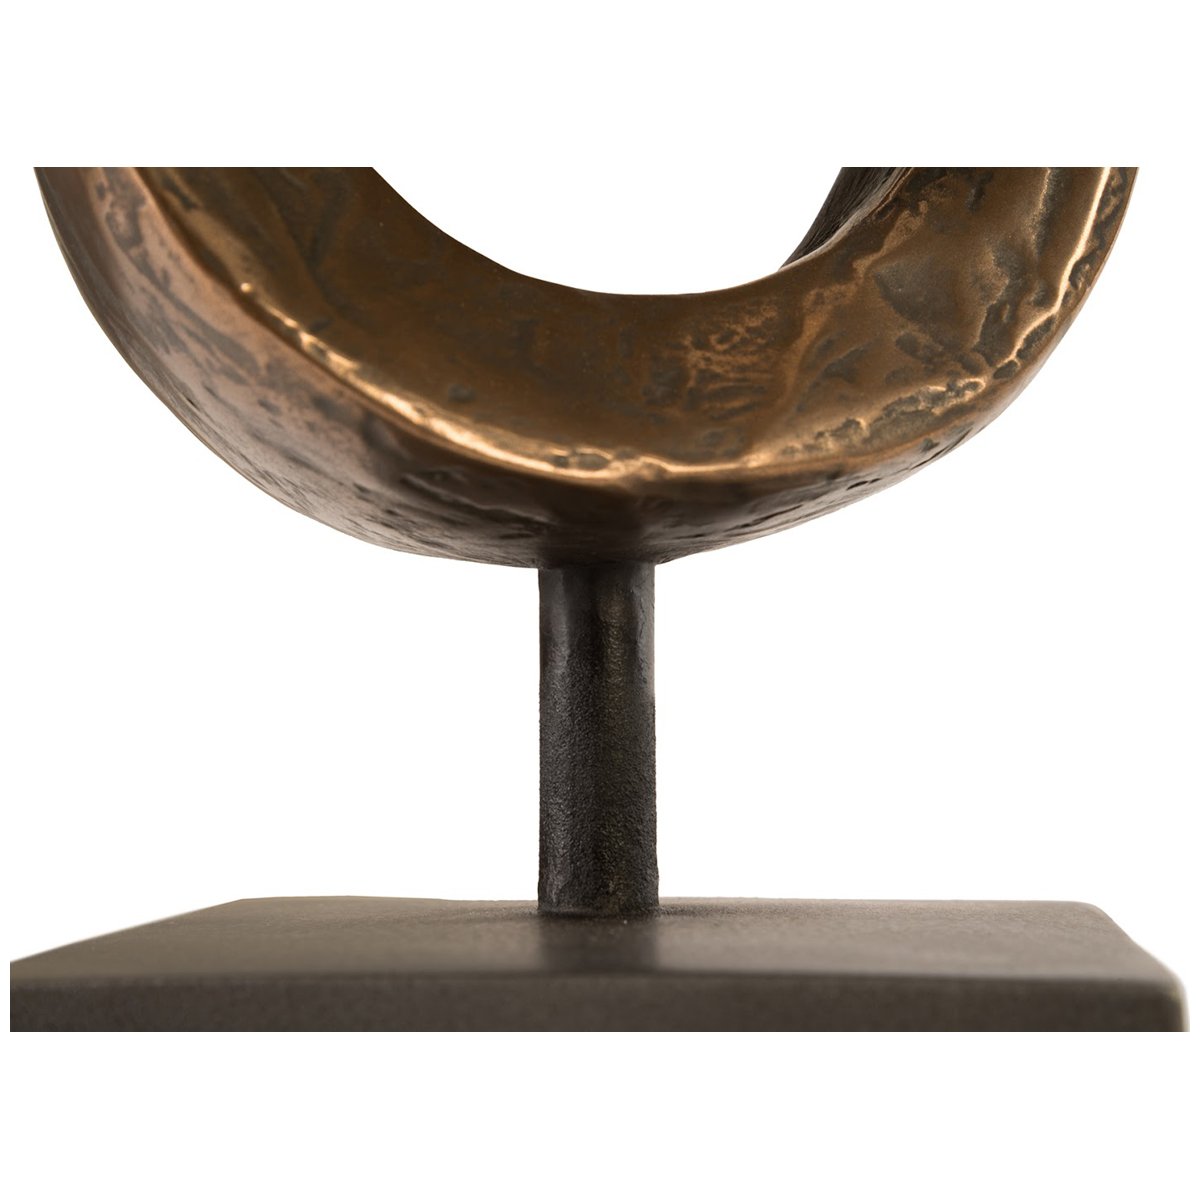 Phillips Collection Trifoil Table Sculpture, Bronze